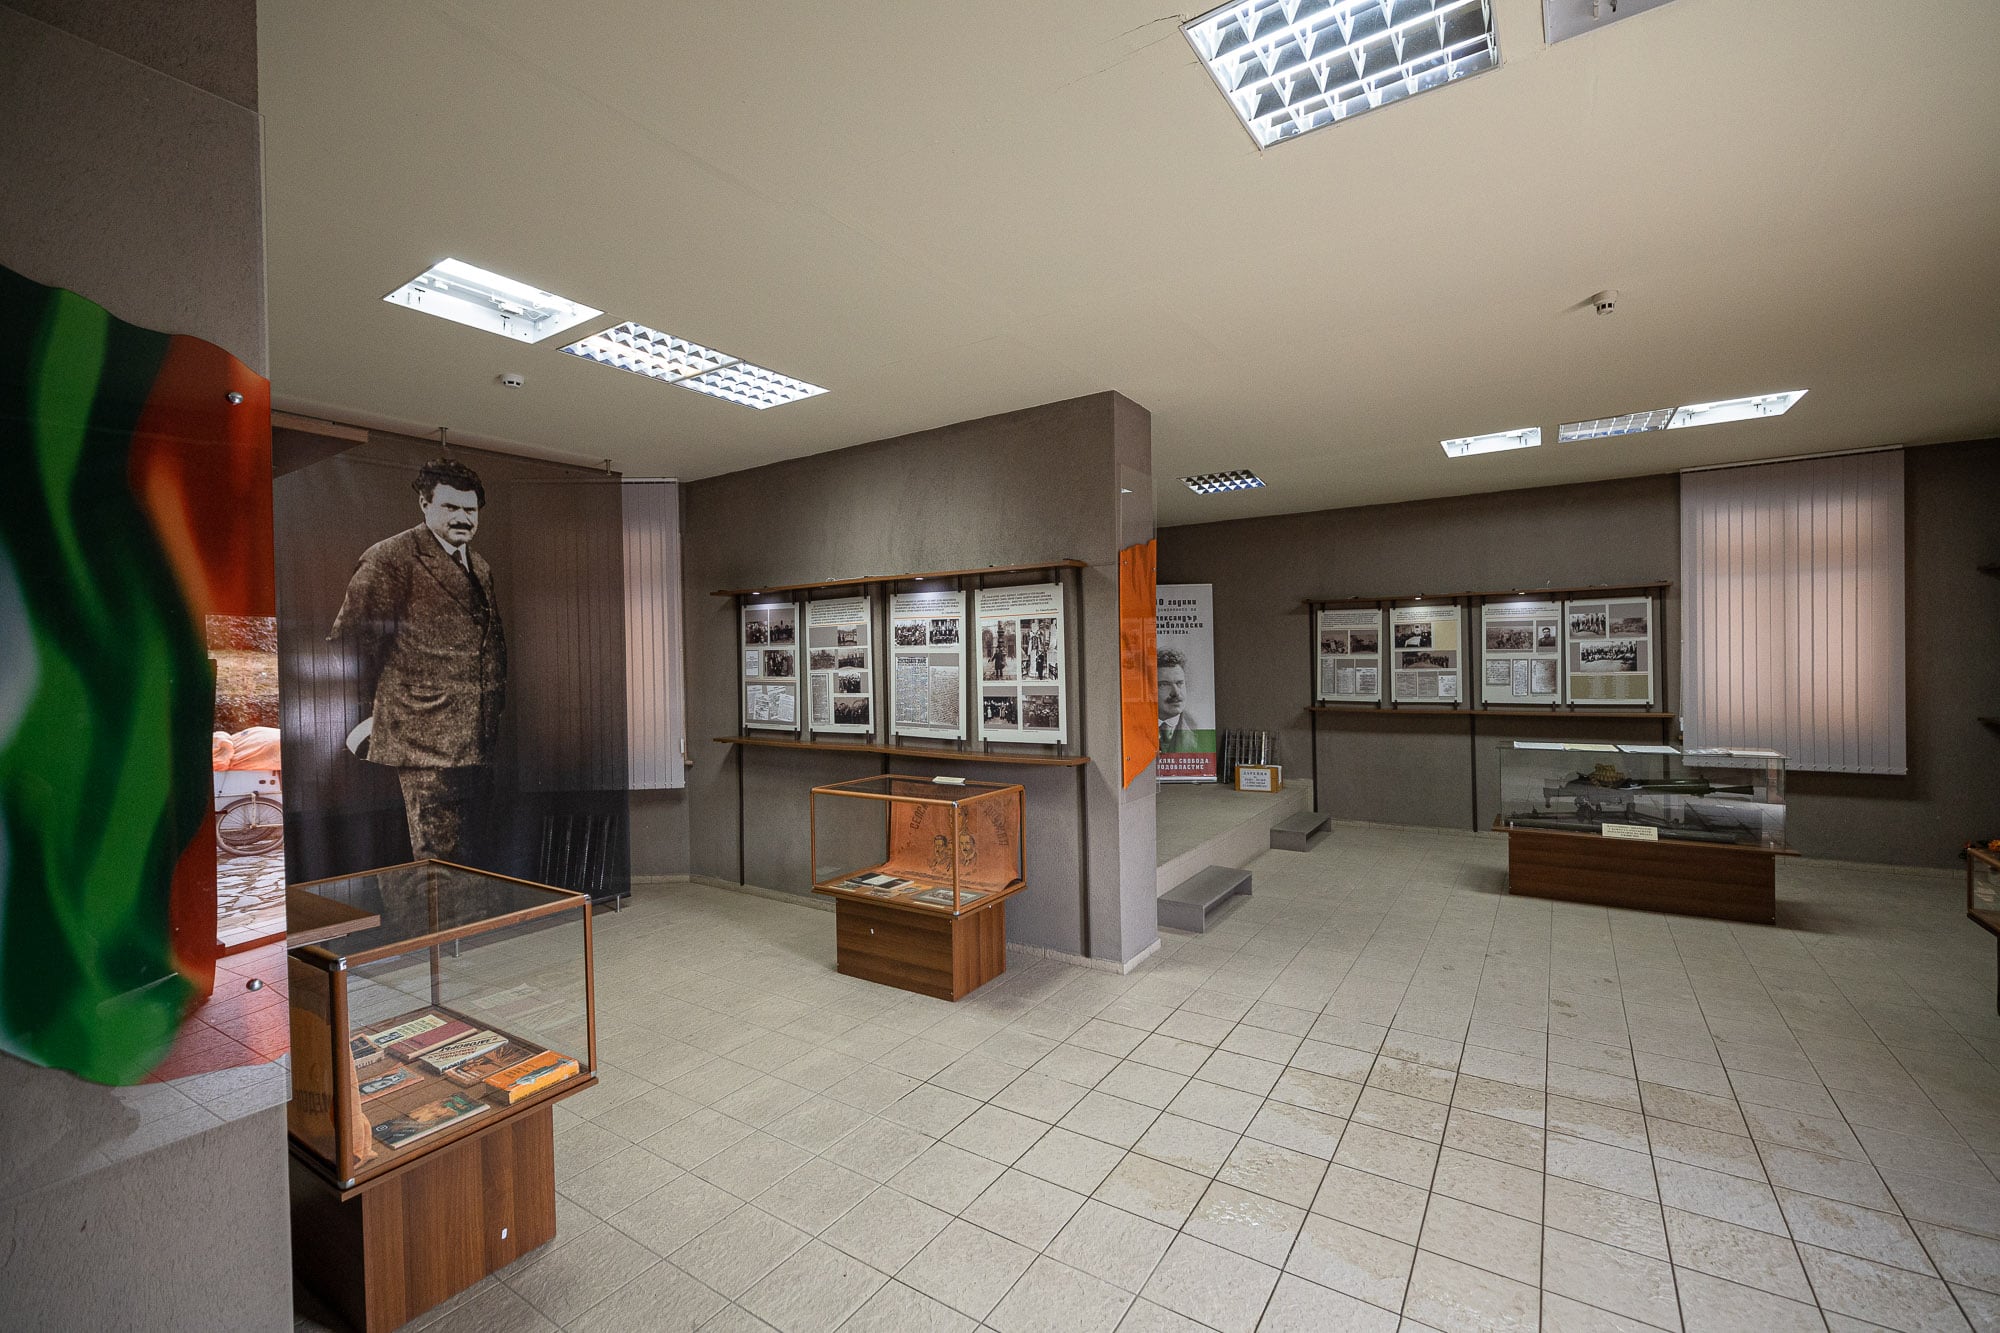 the Stamboliyski exhibition